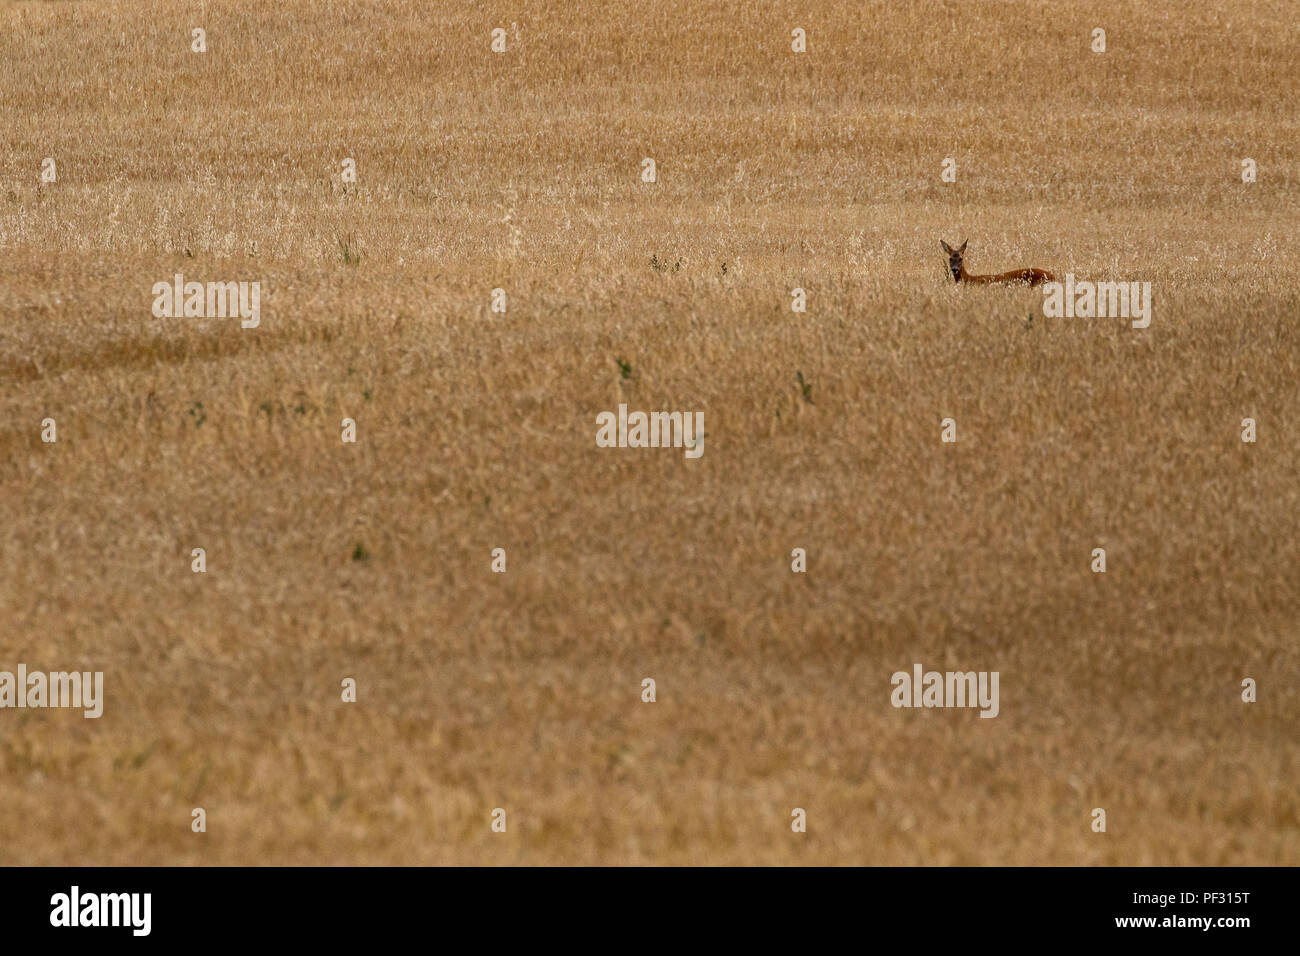 Rehe, Hyla arborea, in einem Getreidefeld, Leiter Schüsse beim Roaming in den Nachmittag im August, Schottland. Stockfoto